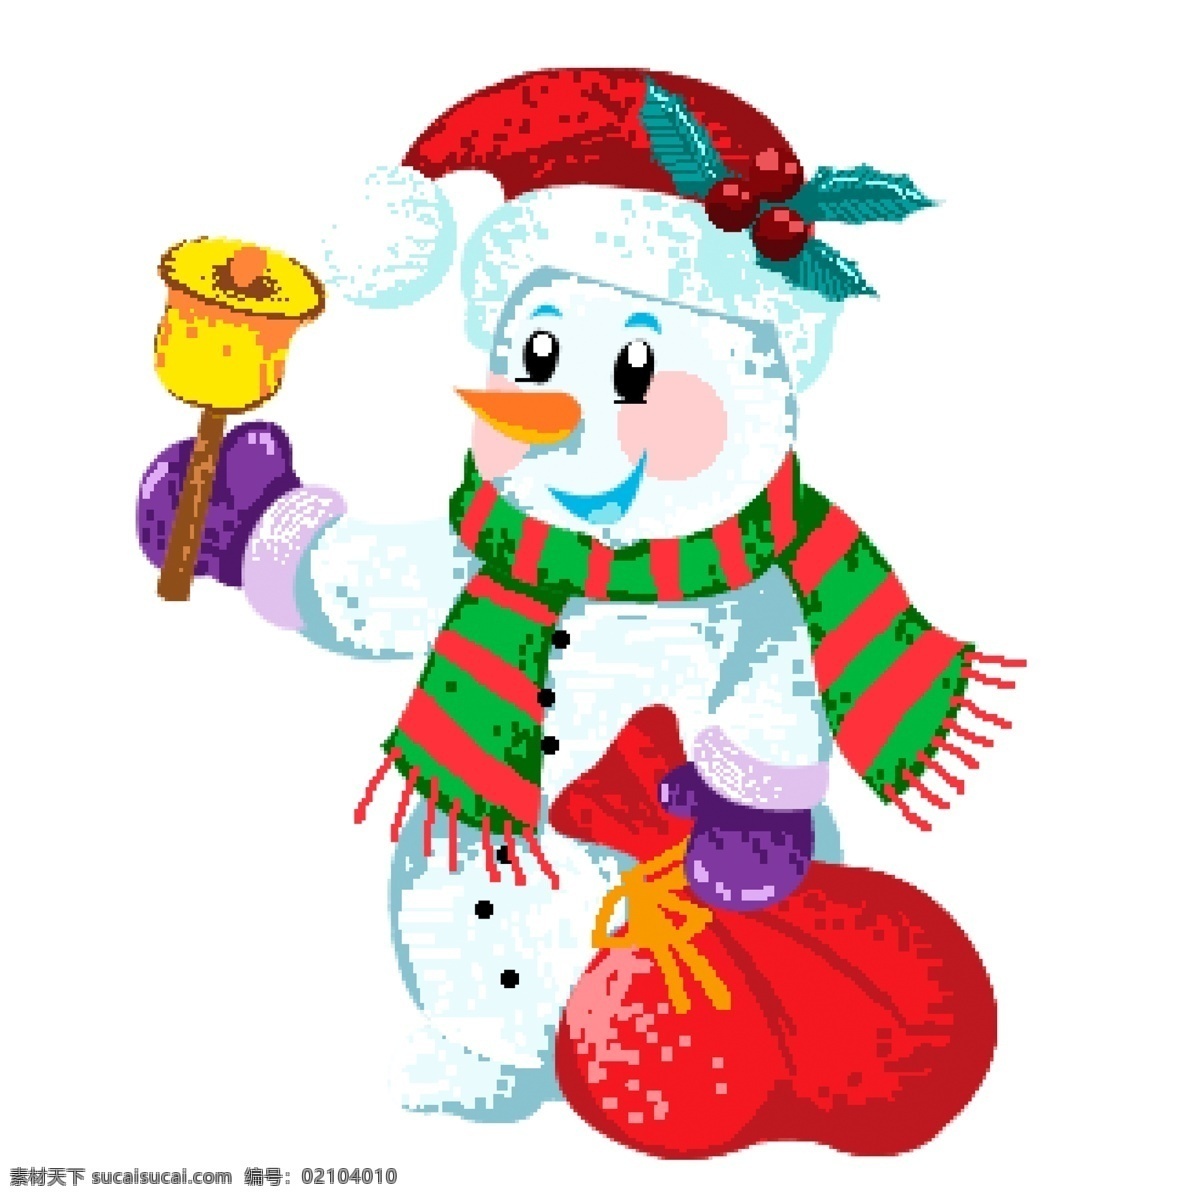 手绘 卡通 装扮 成 圣诞老人 可爱 雪人 原创 元素 礼物 圣诞节 原创元素 摇铃铛 铃铛 西方节日